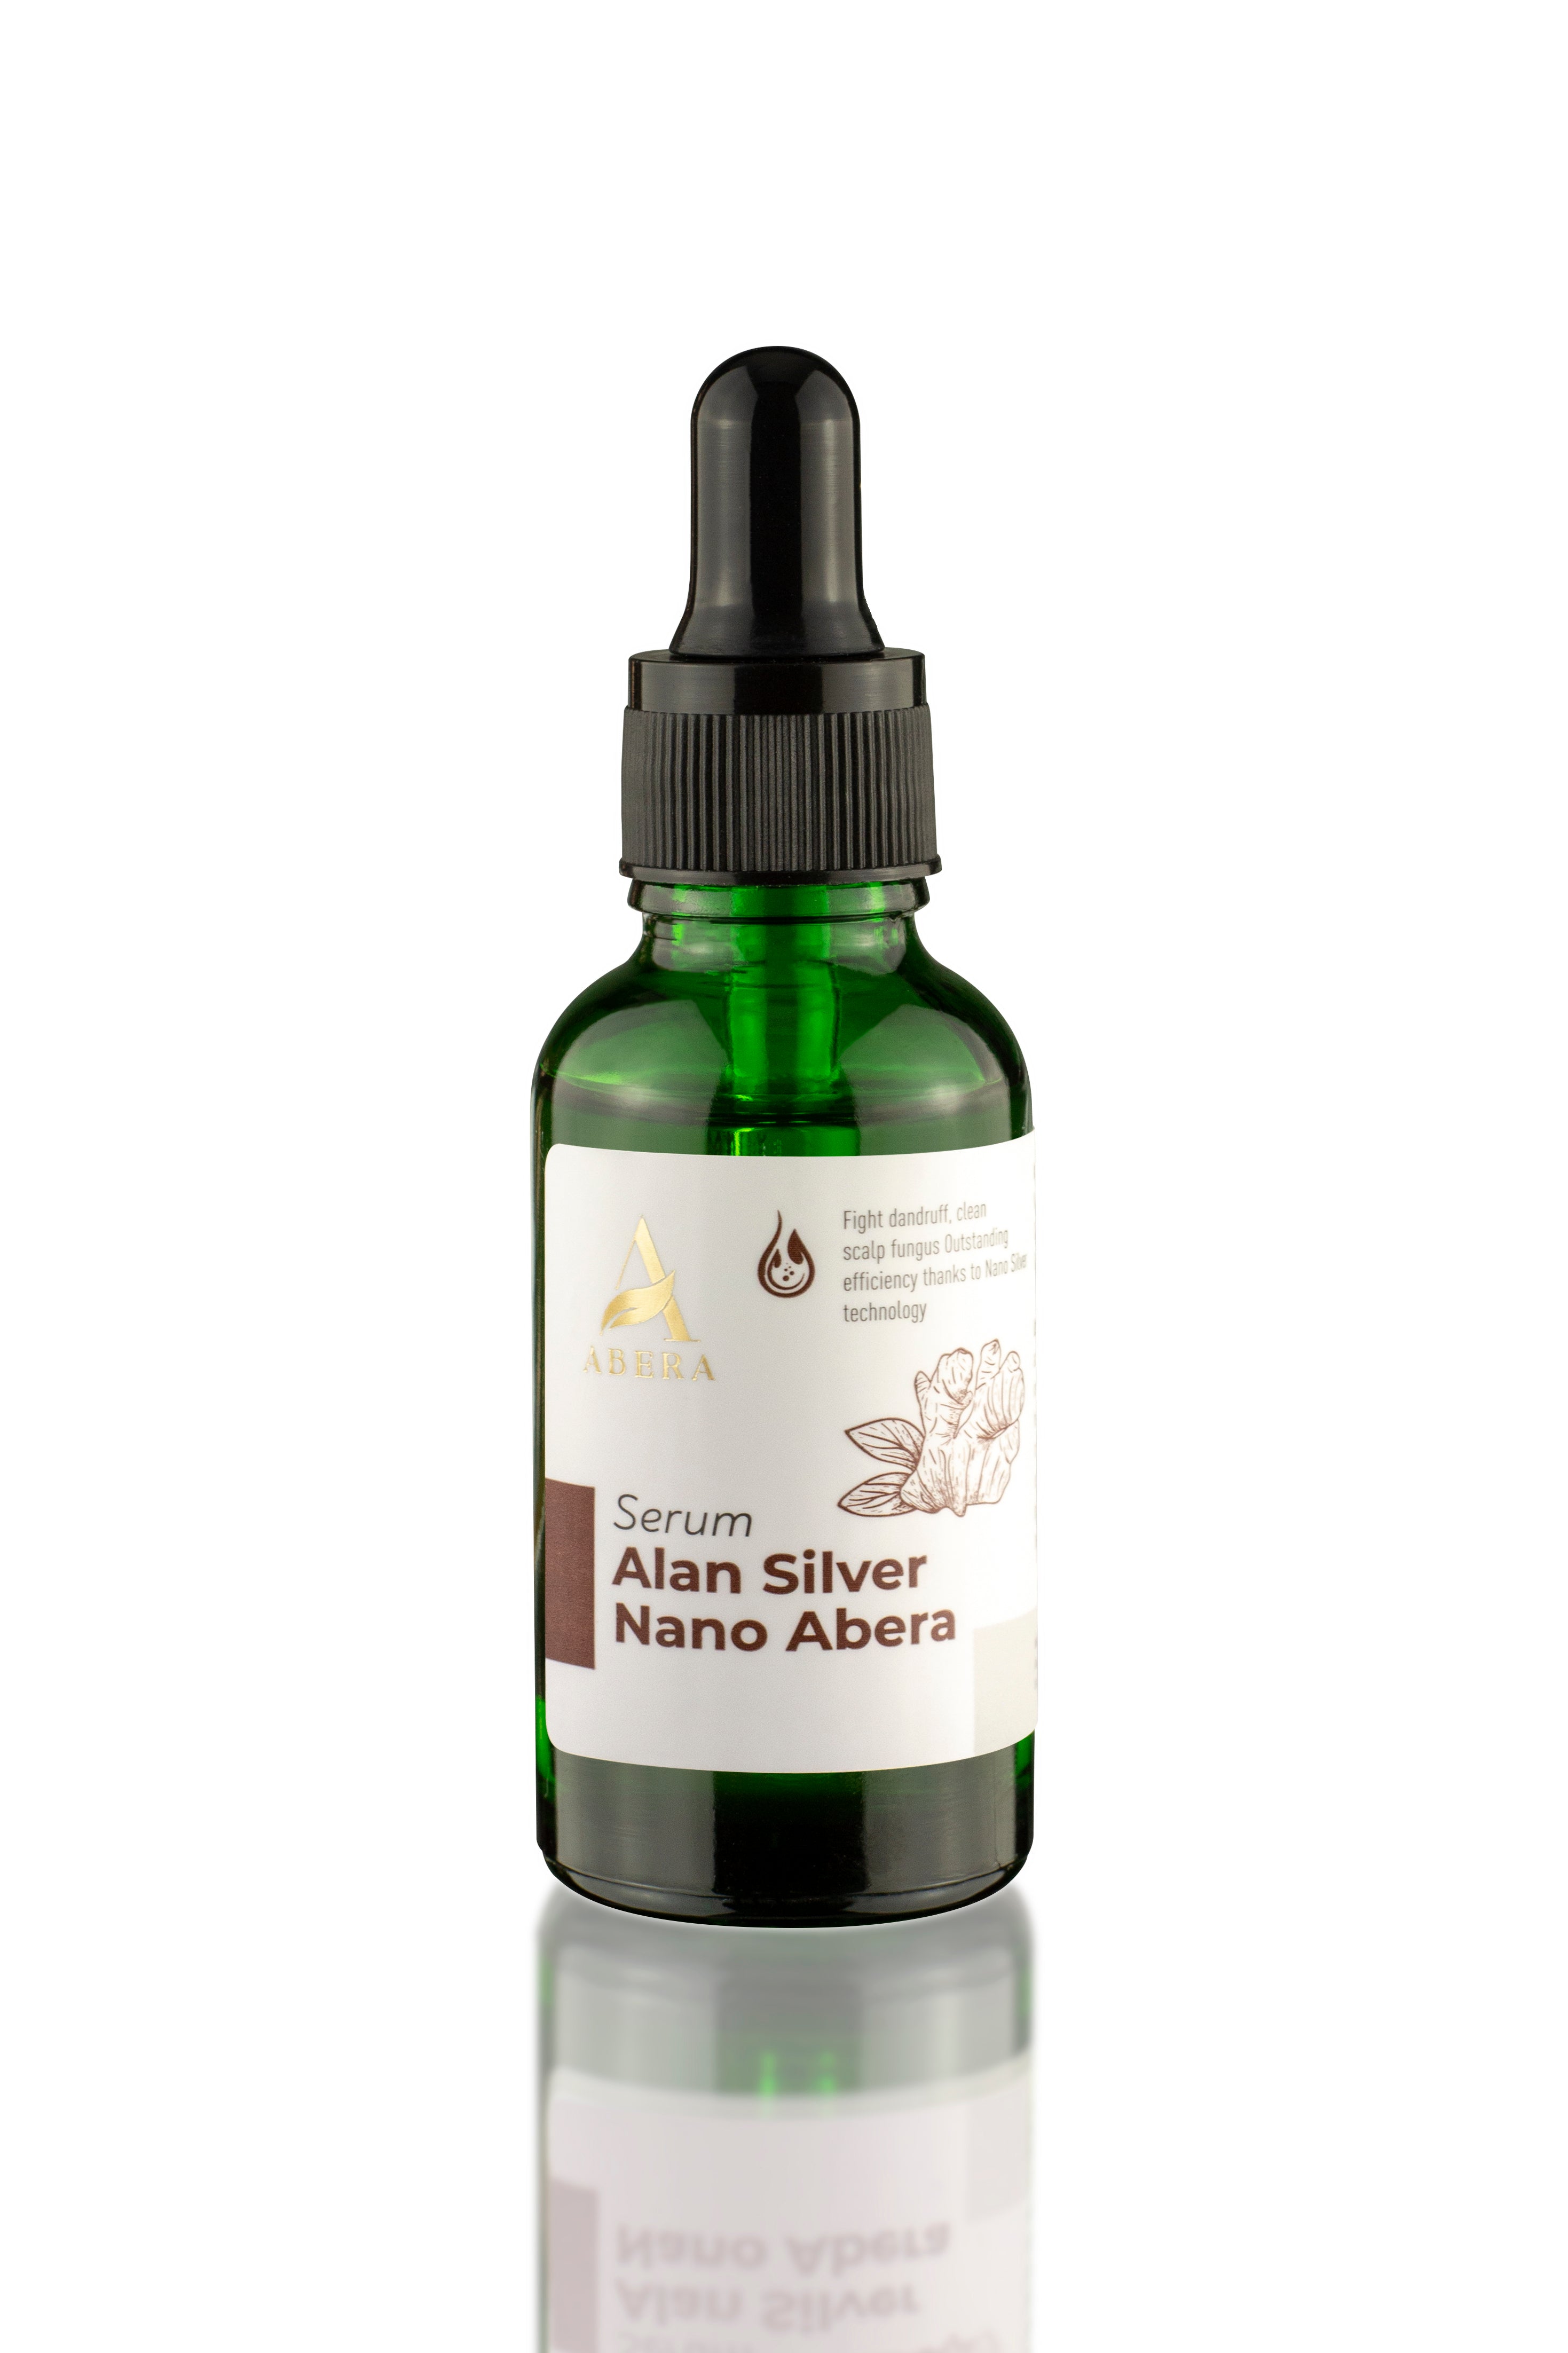 Serum Alan Silver Nano Abera - Made by Vietnamese